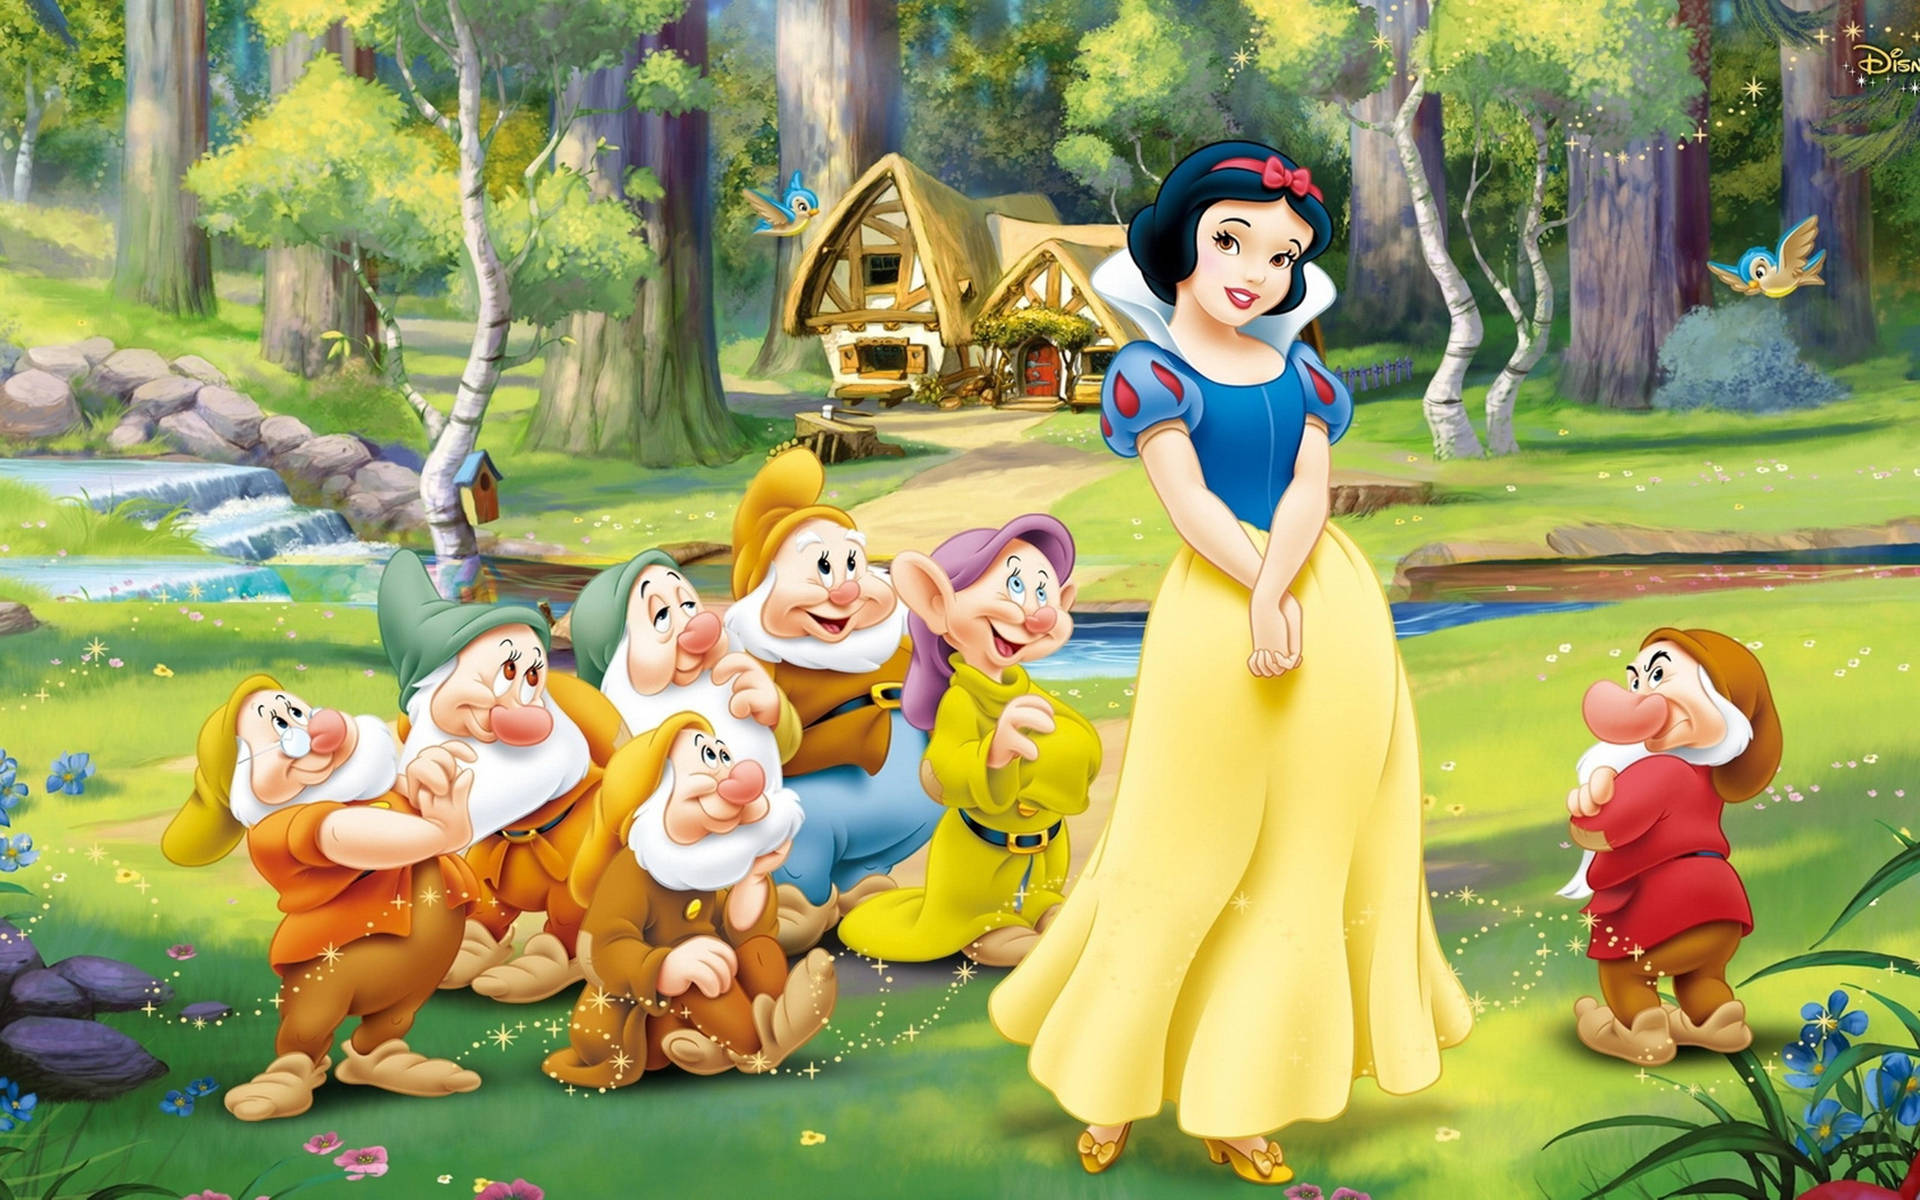 Disney Princess Snow White With Dwarfs